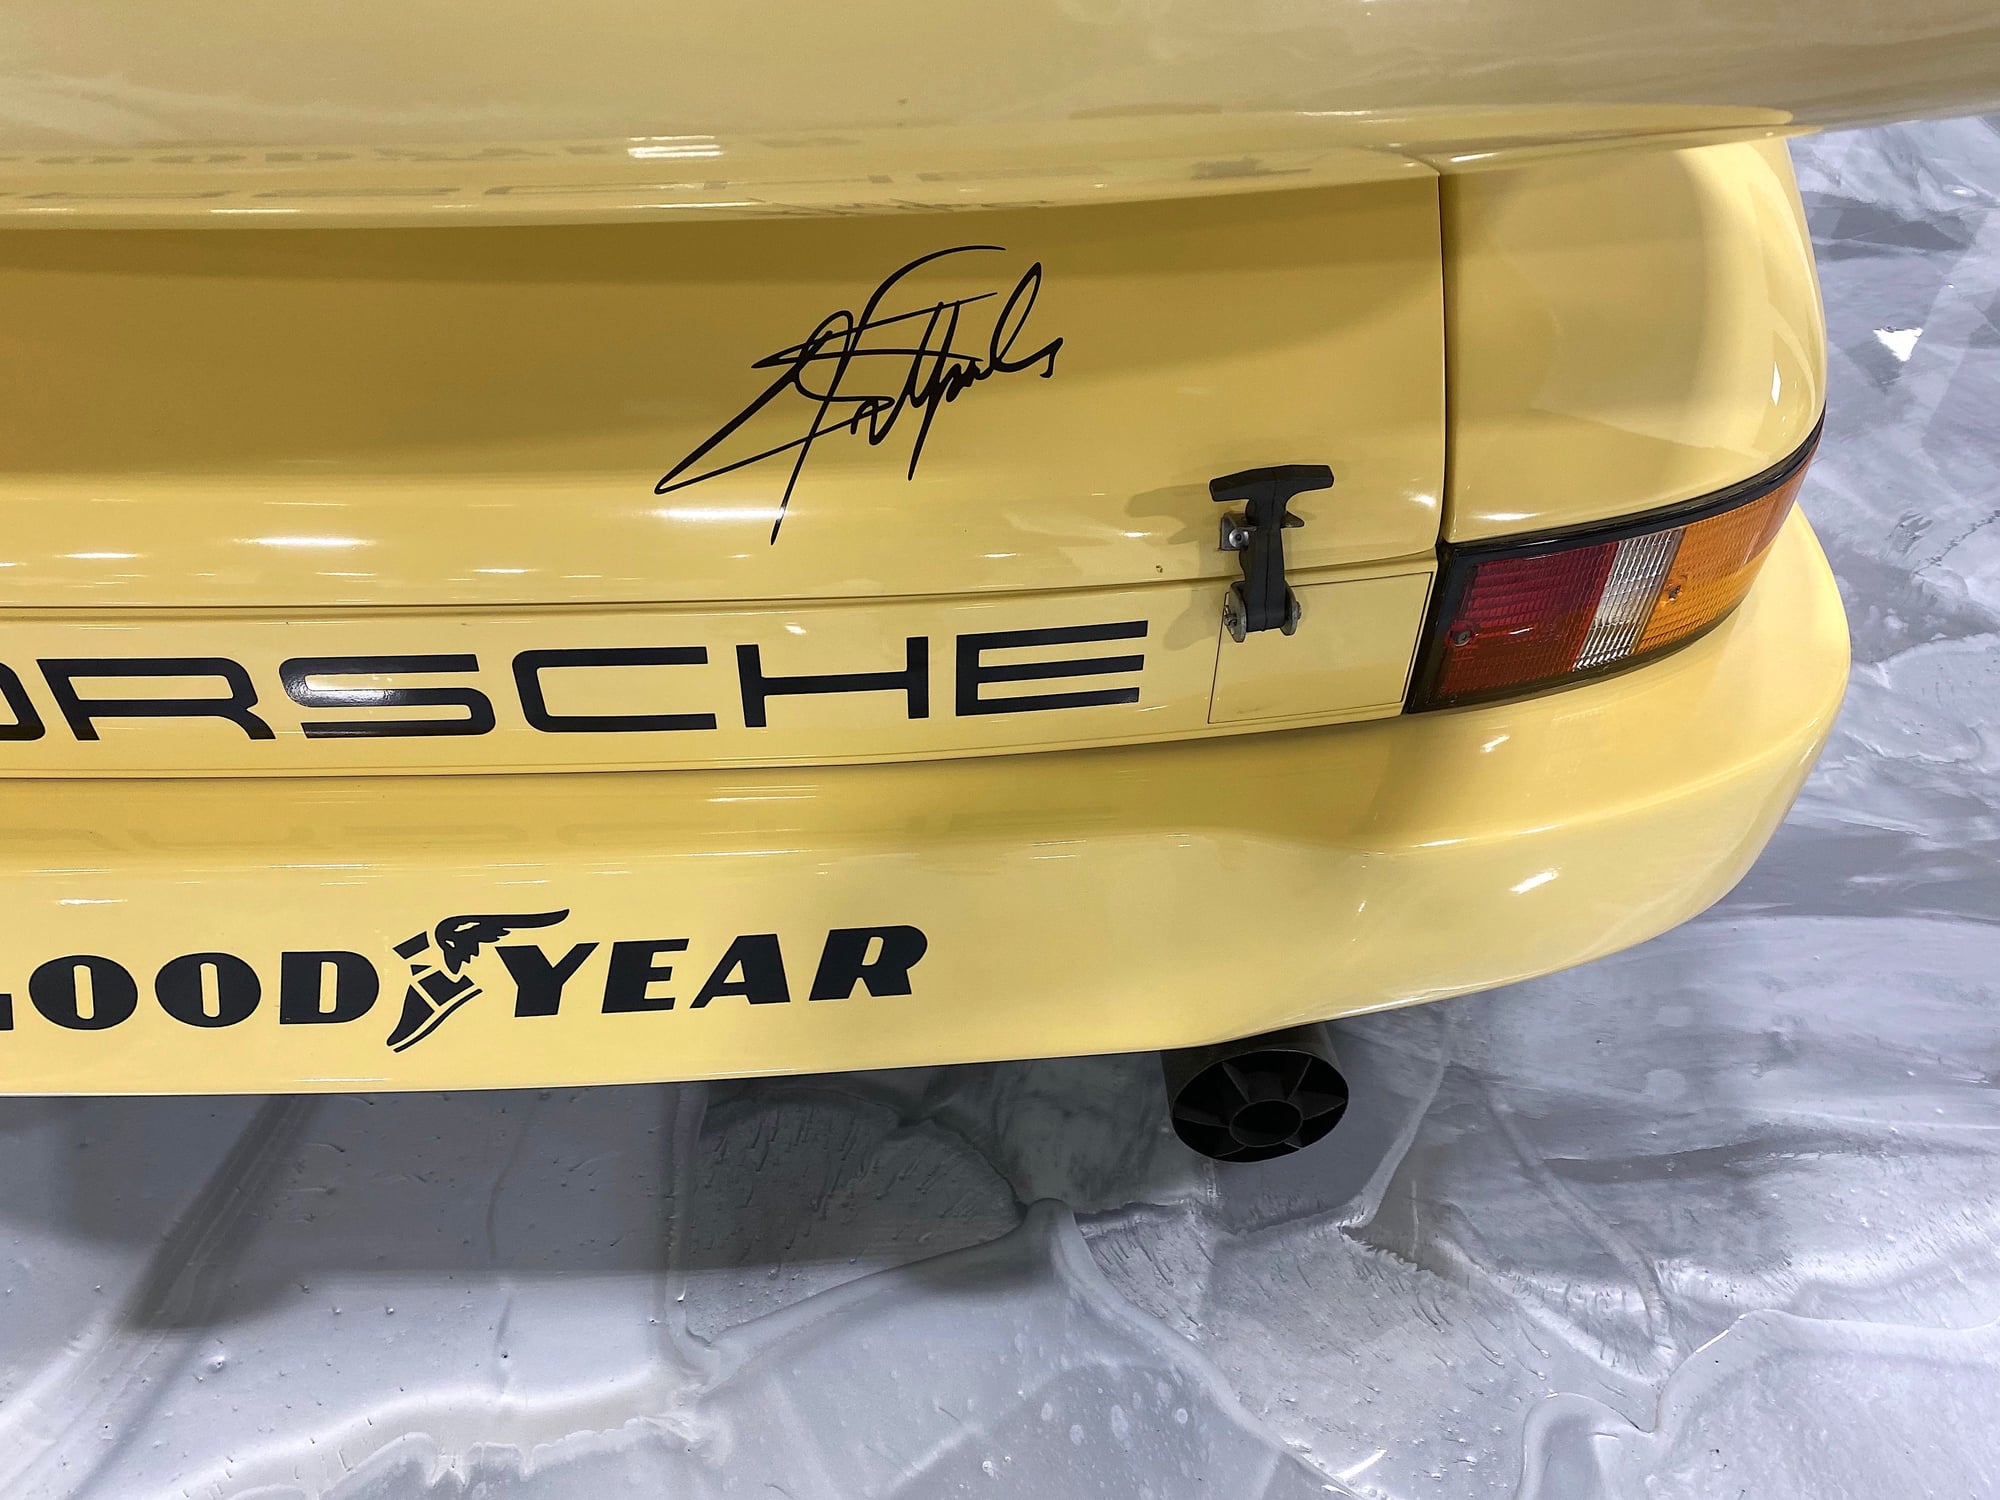 1973 Porsche 911 - 1973 Porsche IROC RSR - Fittipaldi car - Used - VIN 9114600100 - 225 Miles - 6 cyl - 2WD - Manual - Coupe - Yellow - Boca Raton, FL 33431, United States